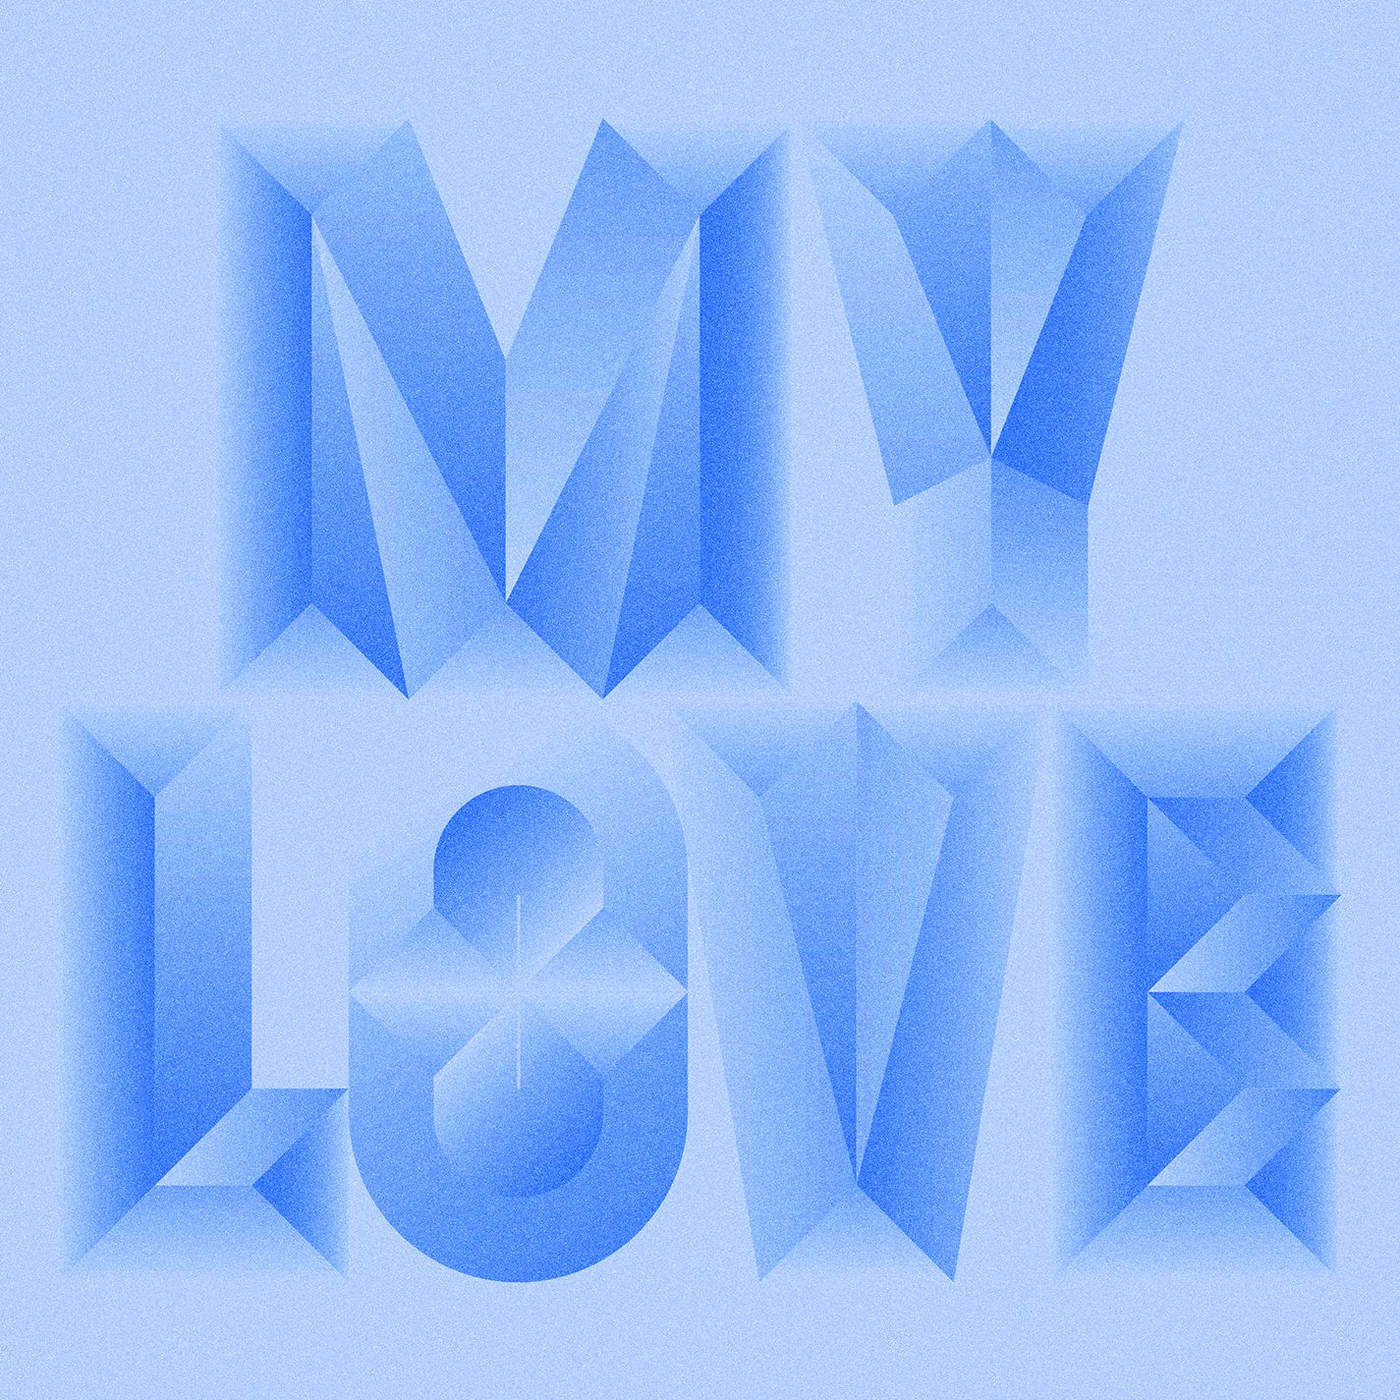 New Music: Majid Jordan – 'My Love' (Feat. Drake) | HipHop-N-More